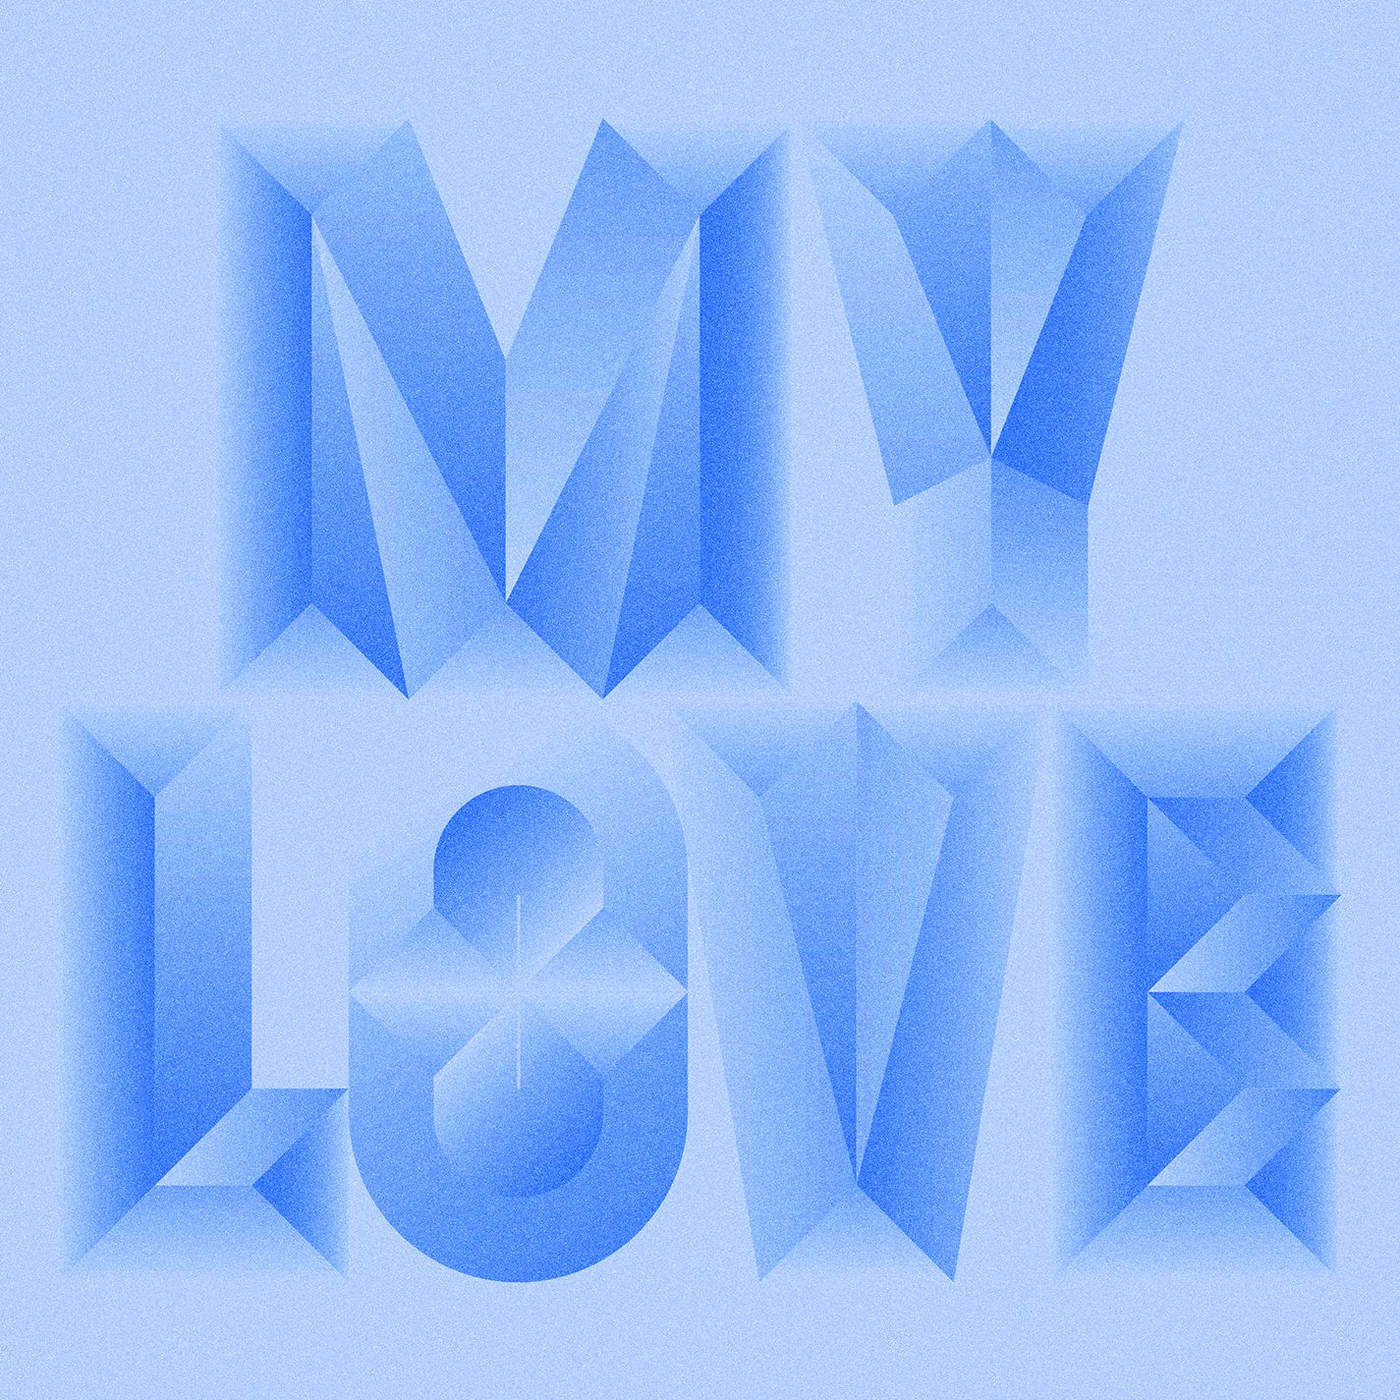 New Music: Majid Jordan – 'My Love' (Feat. Drake) | HipHop-N-More